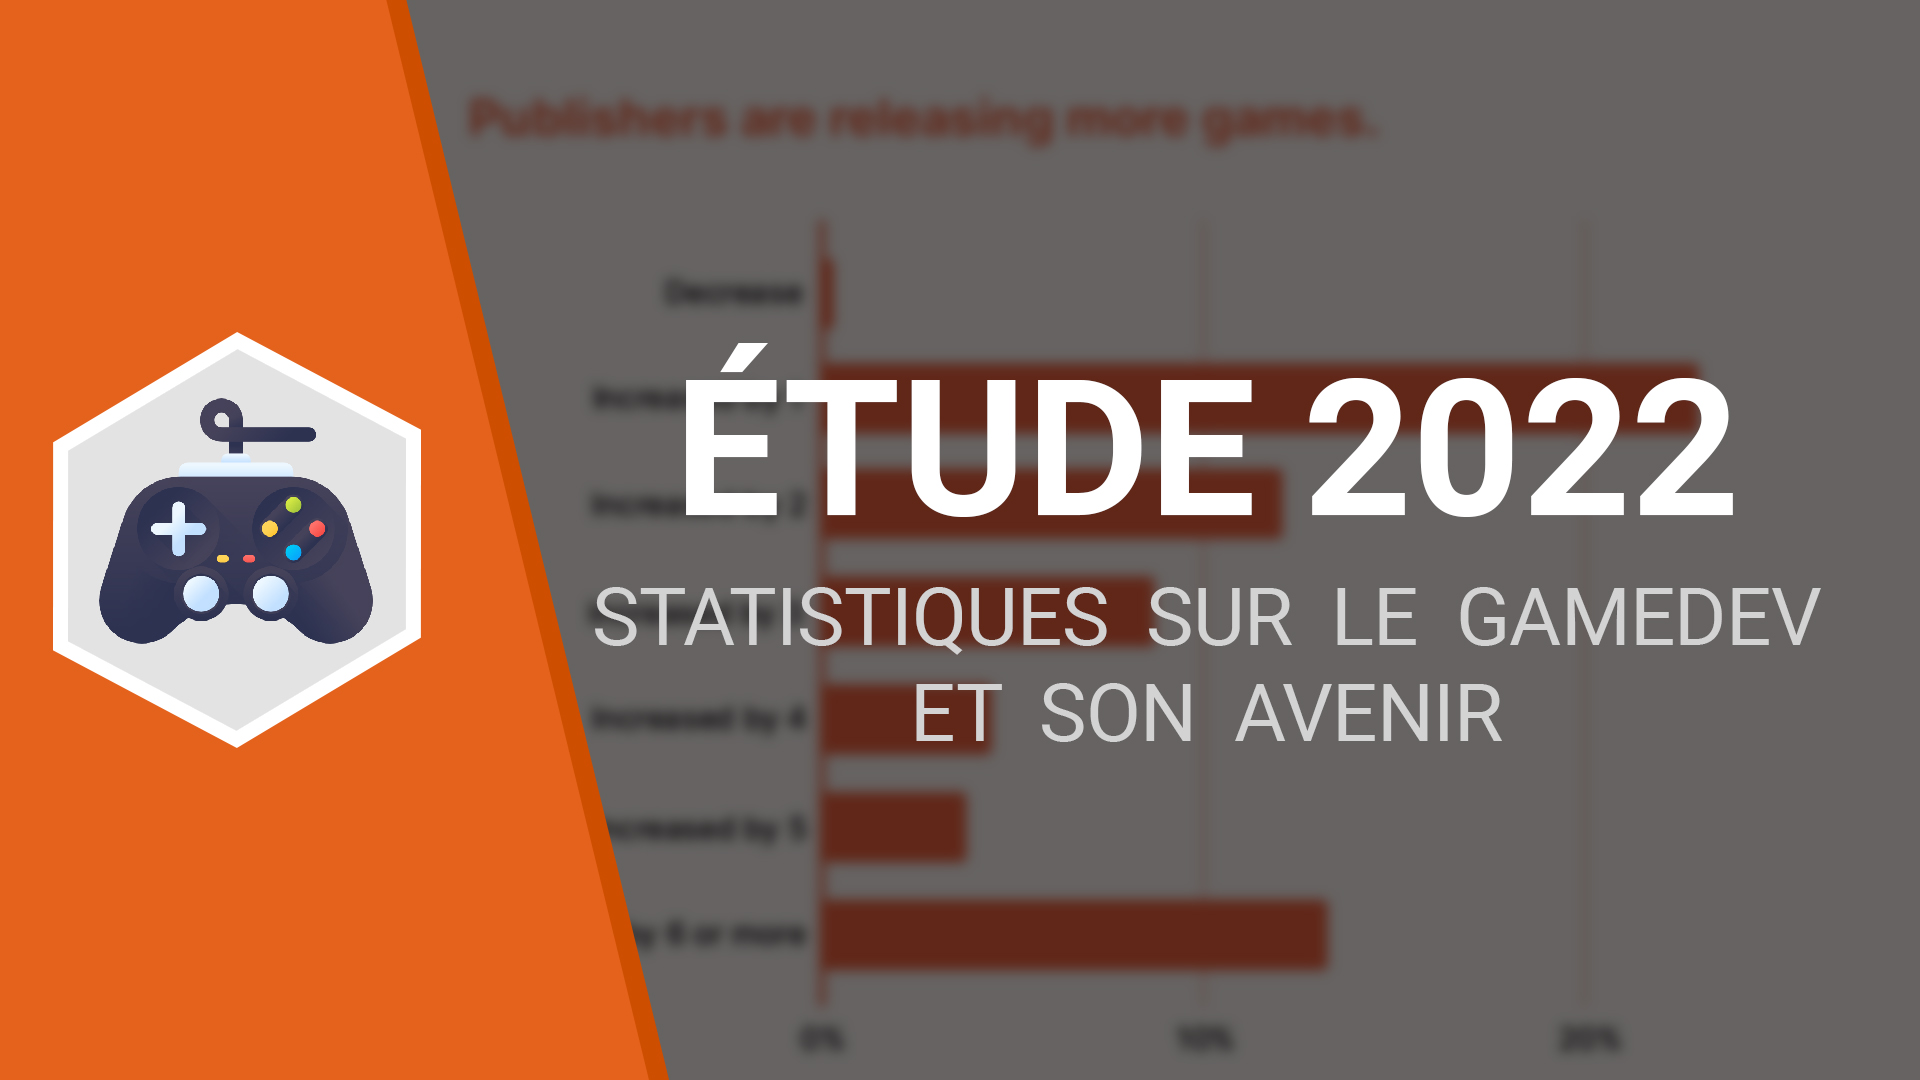 ETUDE 2022 : Quelques statistiques sur le gamedev